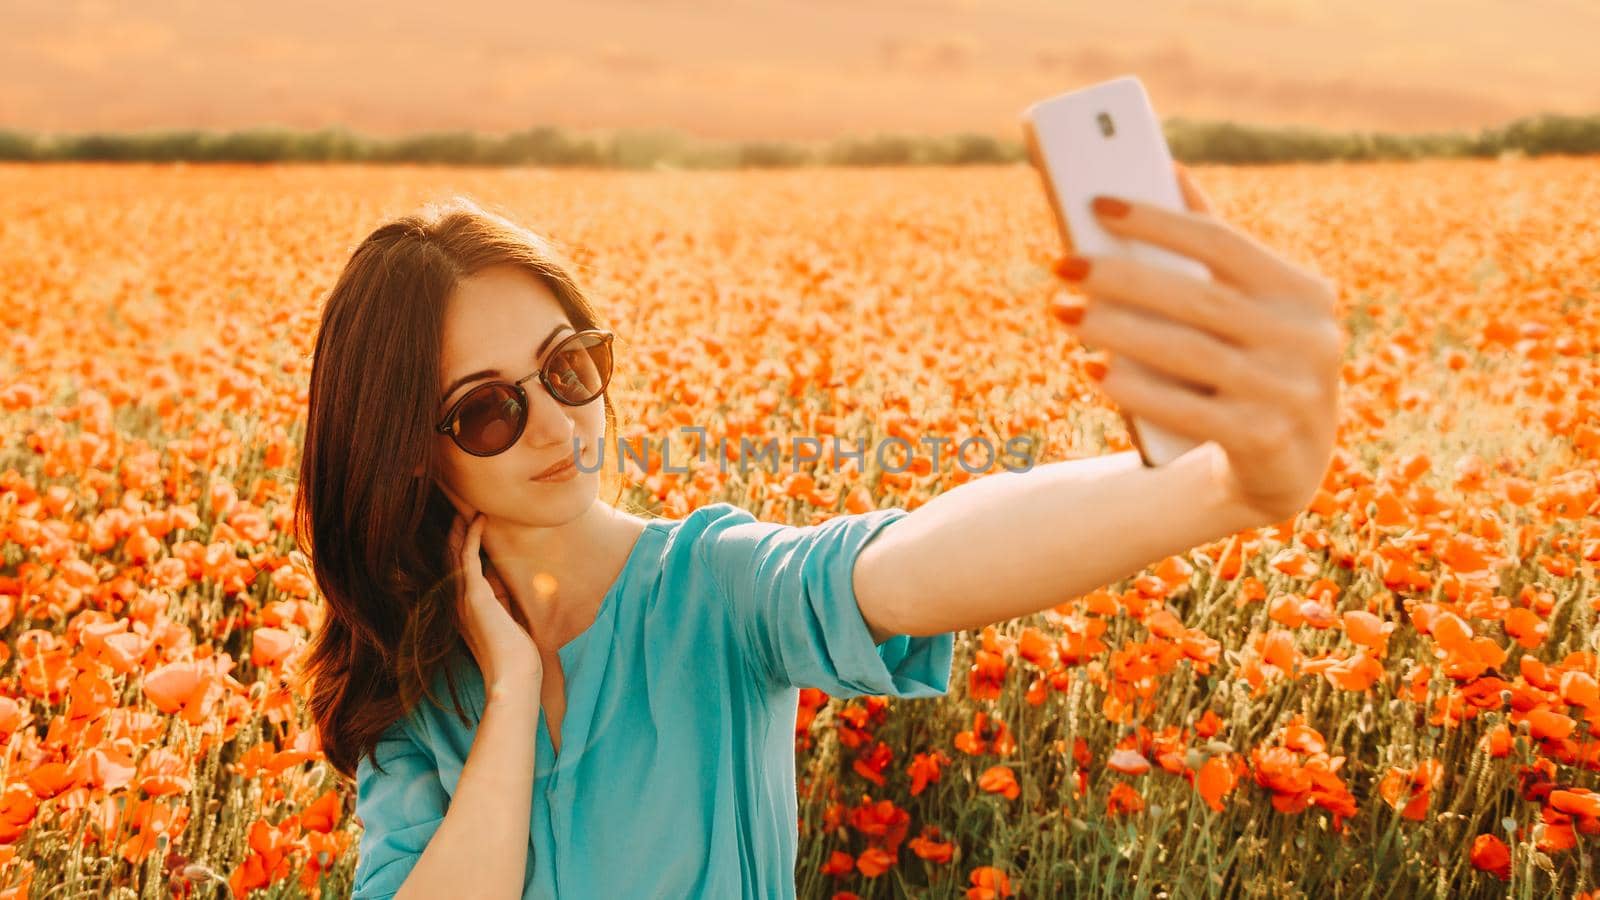 Girl making selfie in poppies flower meadow. by alexAleksei